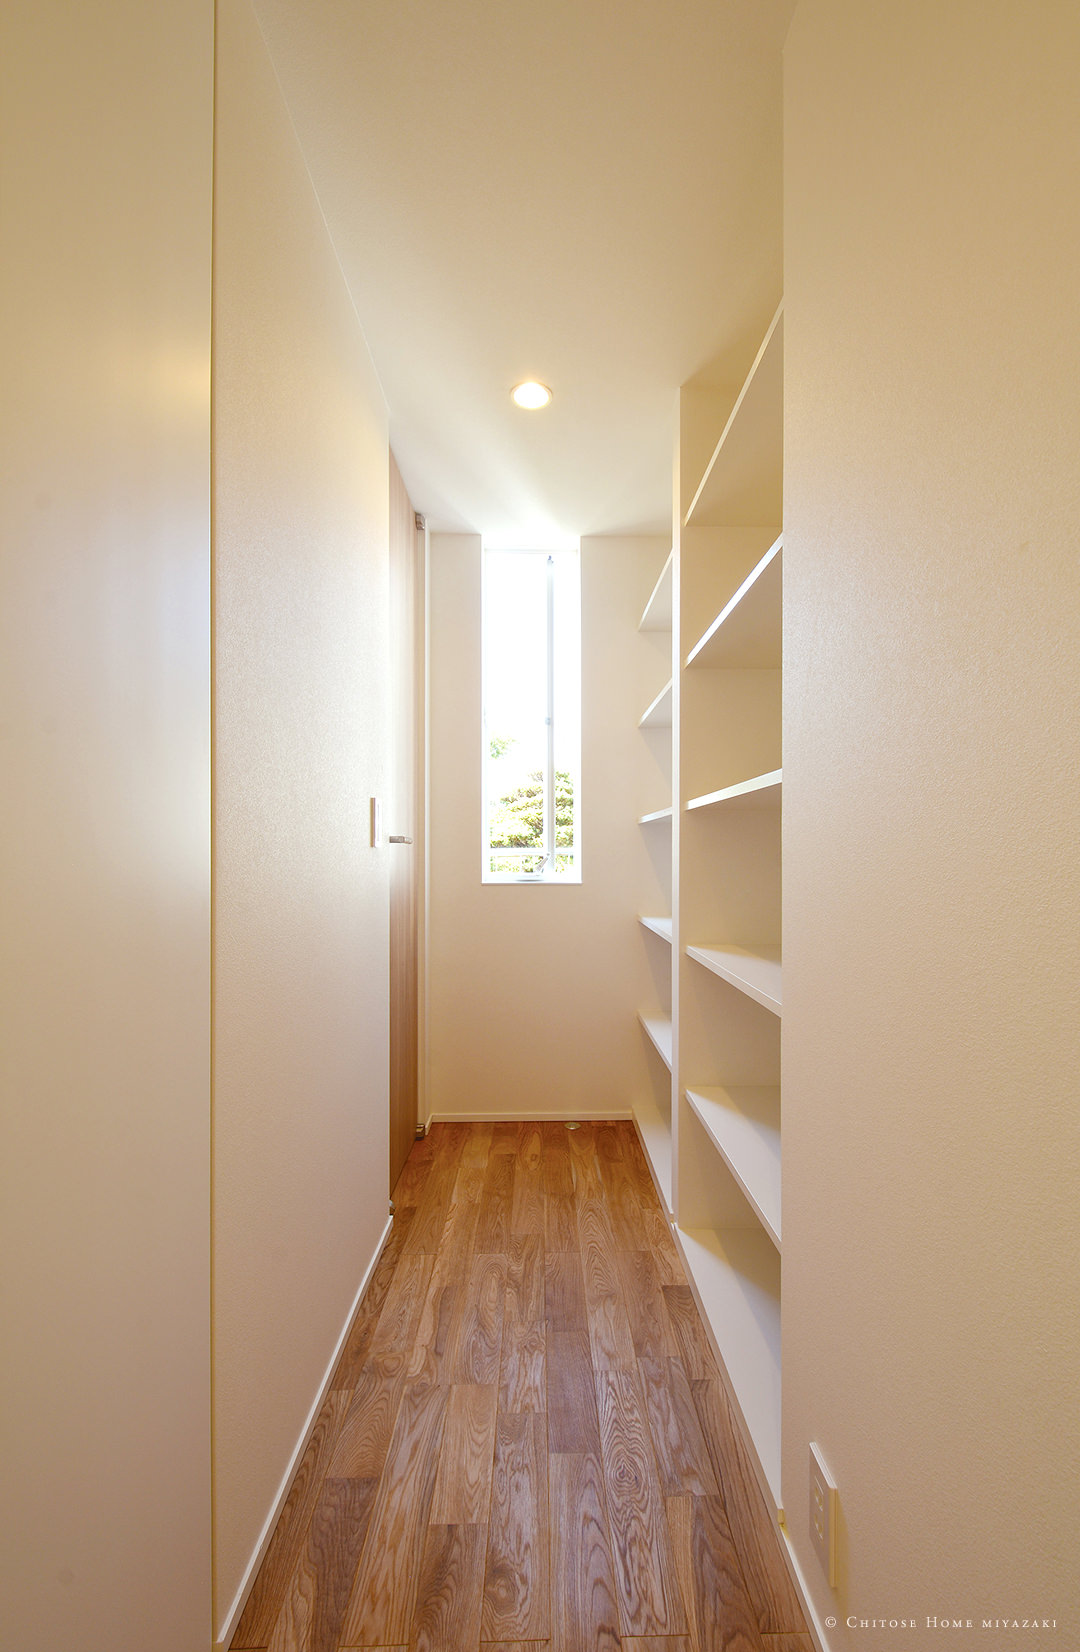 1階廊下には本棚を造作。廊下の一番奥に窓を設置することで、廊下に間接光と通風をもたらす仕掛けを。